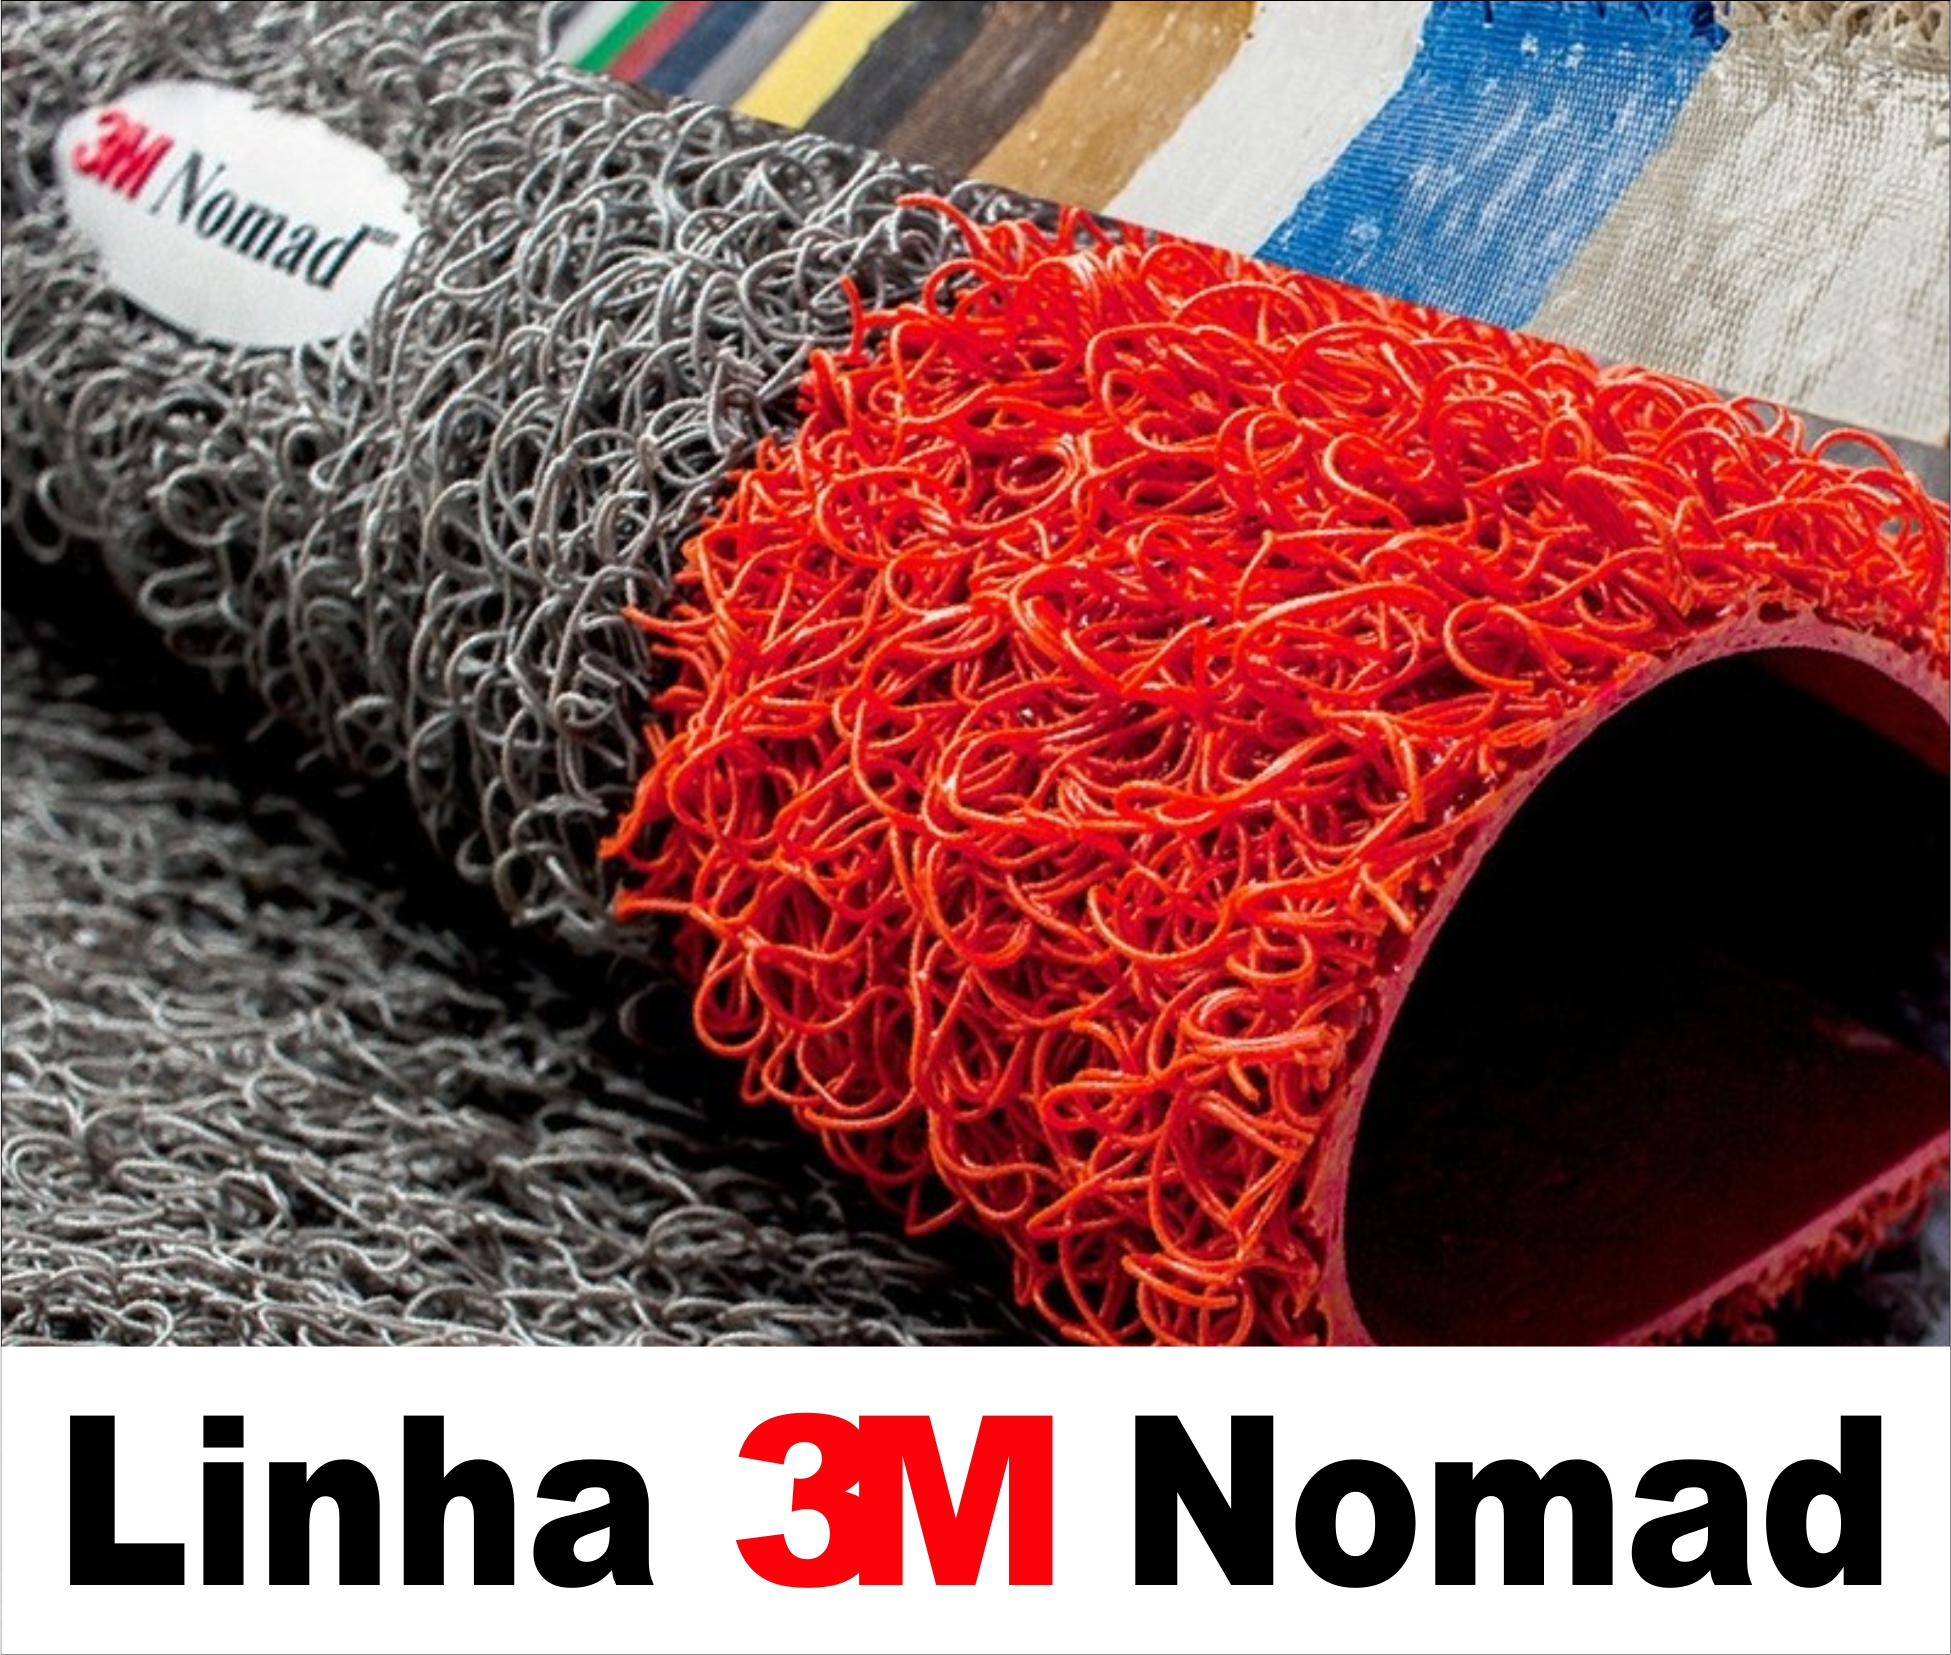 img_noticias/CAPACHO 3M NOMAD LINHA NOBRE